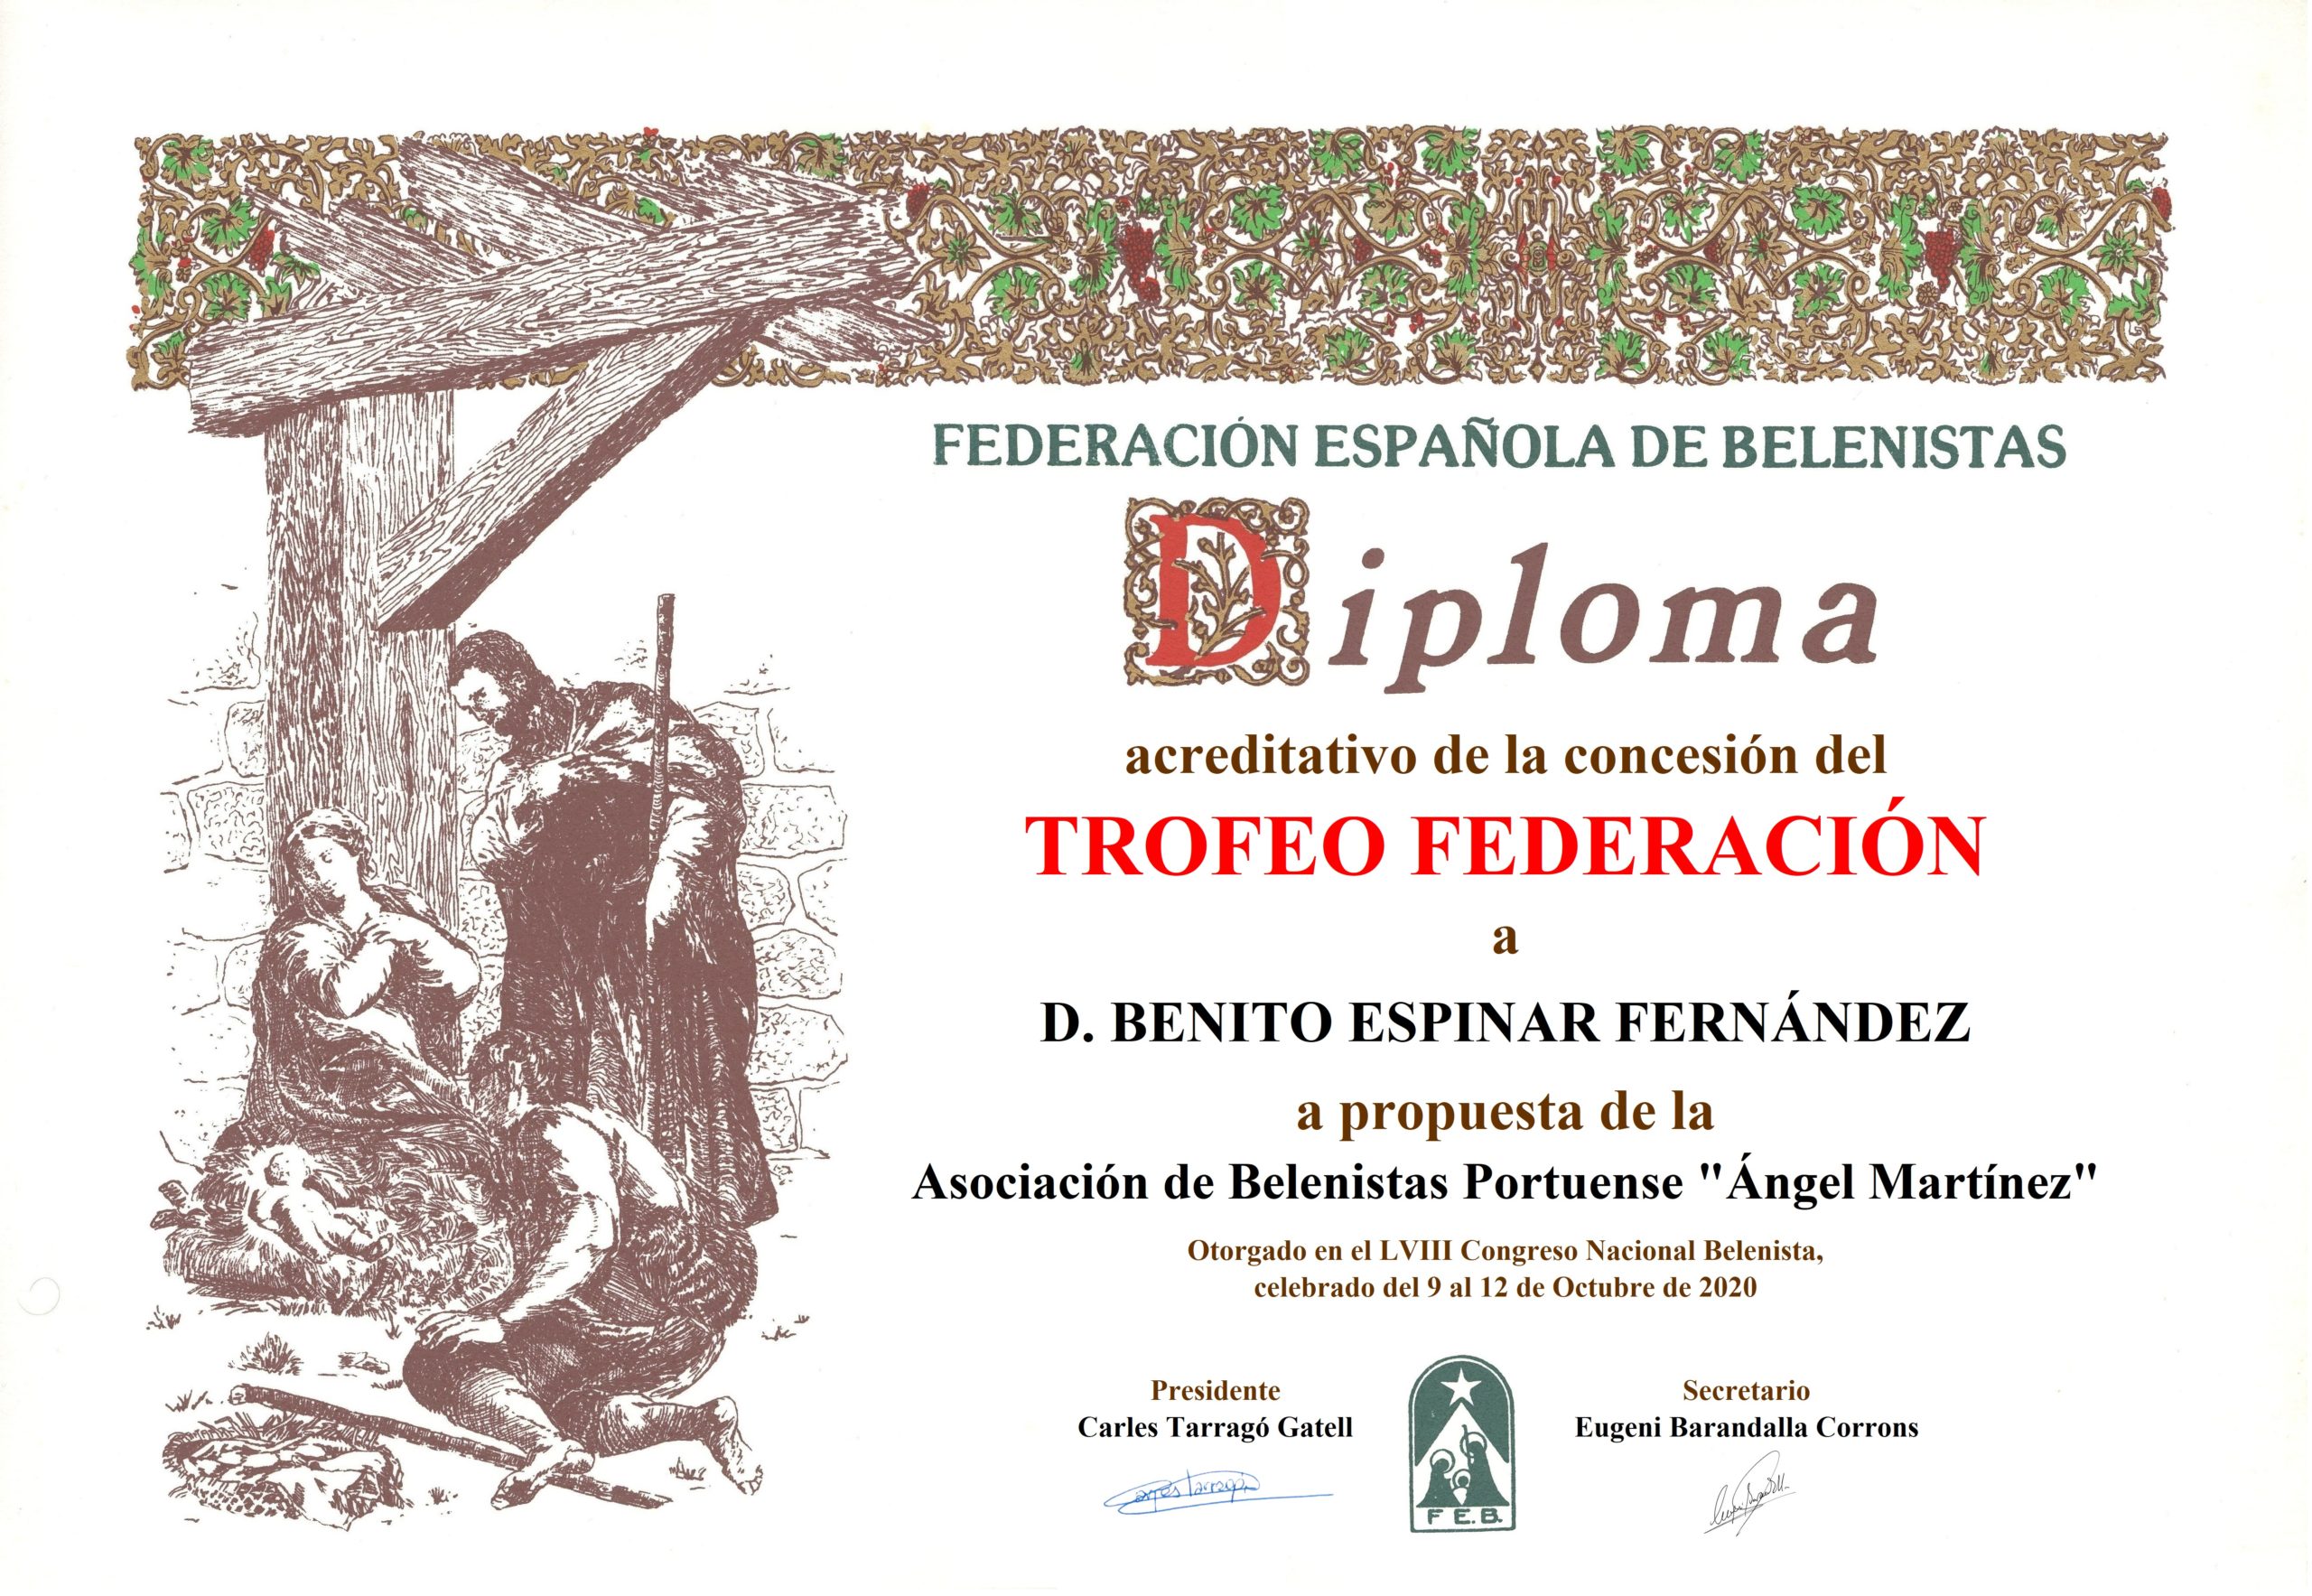 Diploma Trofeo FEB 2020 - Benito Espinar Fernández